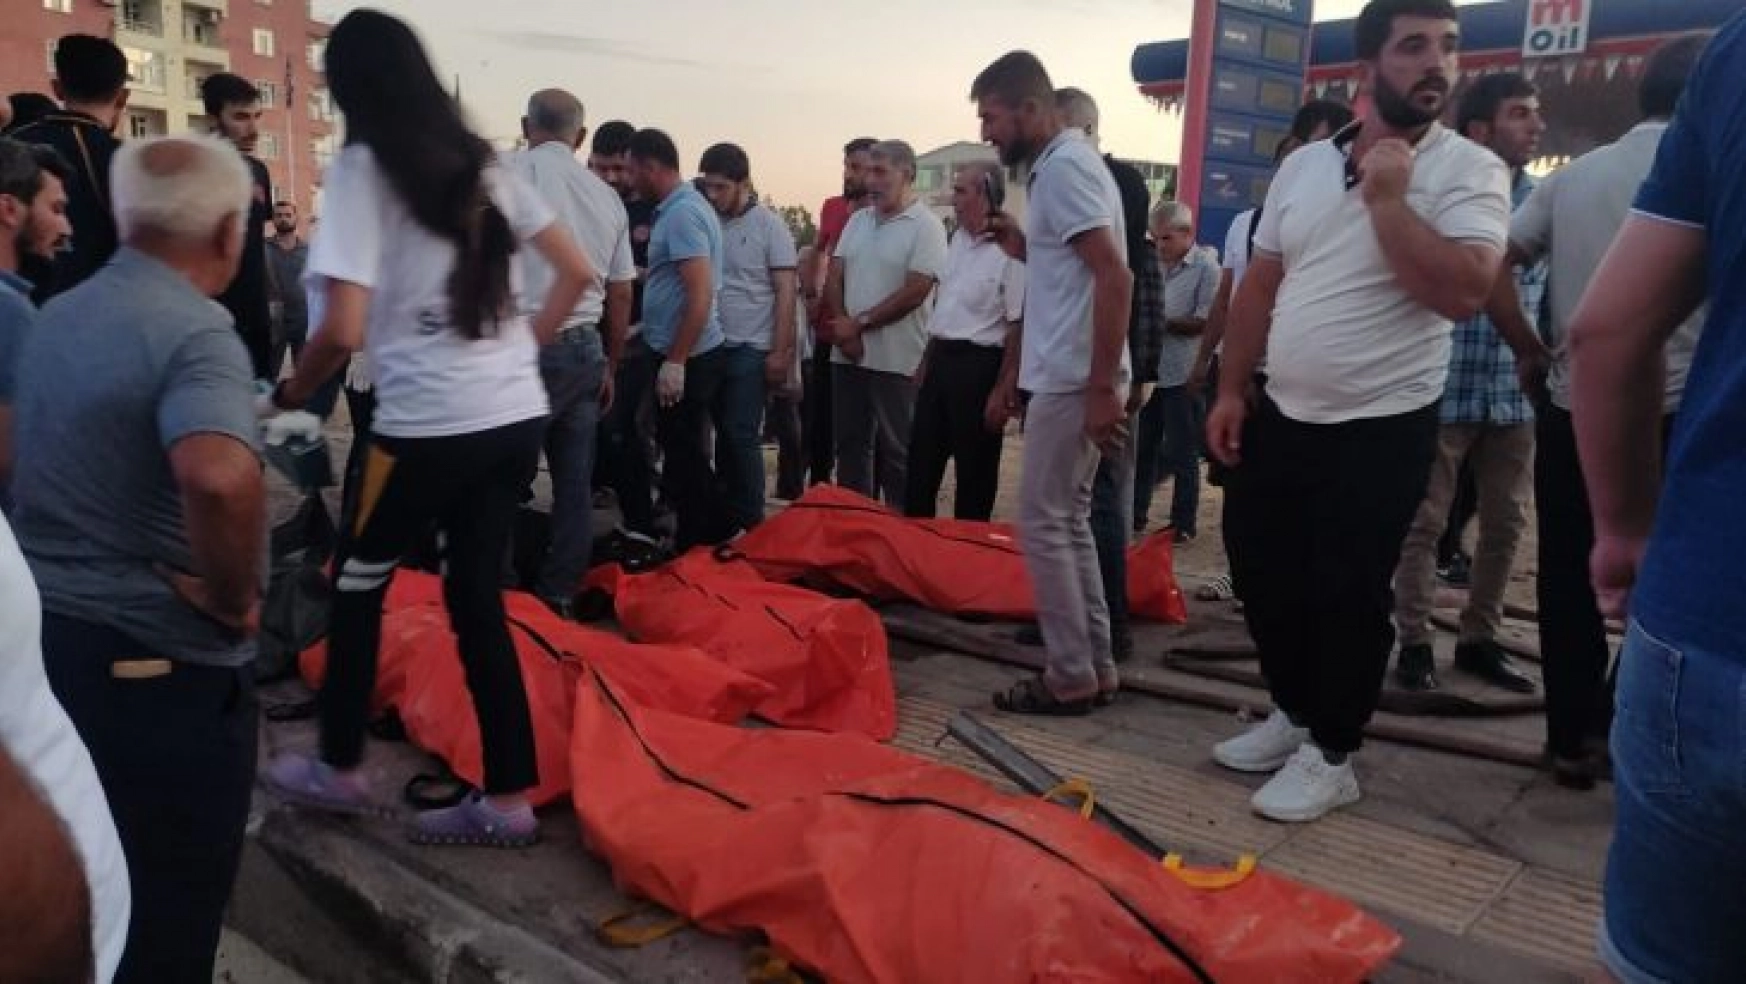 Mardin'de freni patlayan tır dehşet saçtı: 8 ölü, çok sayıda yaralı